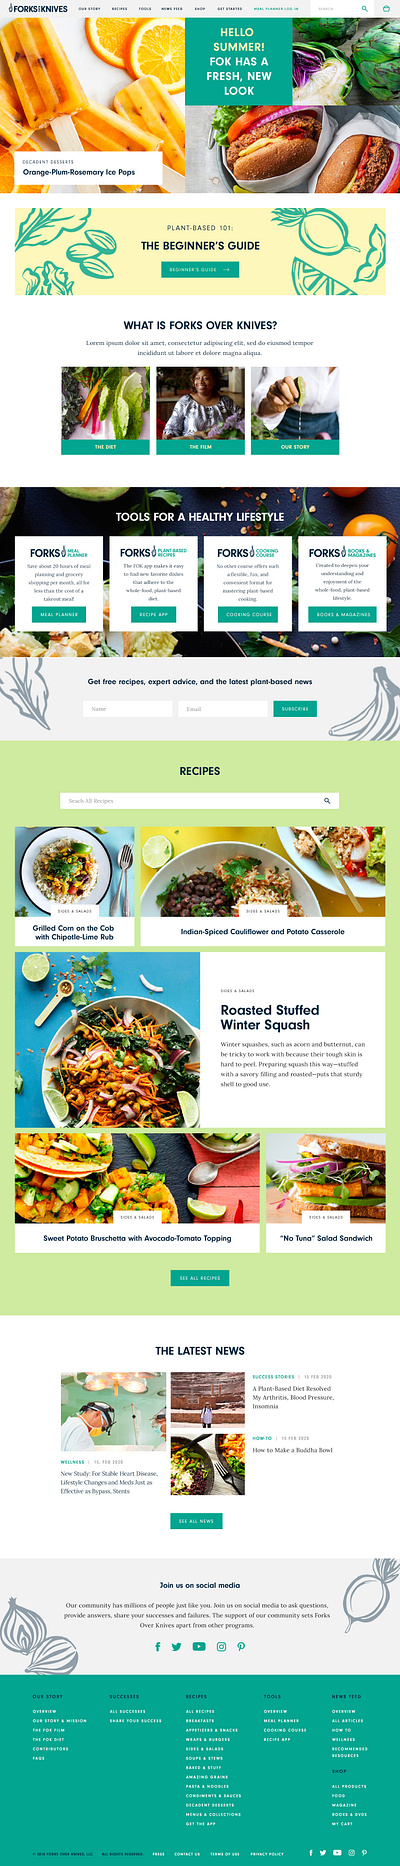 Website Design: Forks Over Knives branding colorful design digital food graphic design health hero homepage illustration layout lifestyle pastel recipe redesign subpage ui ux web design website